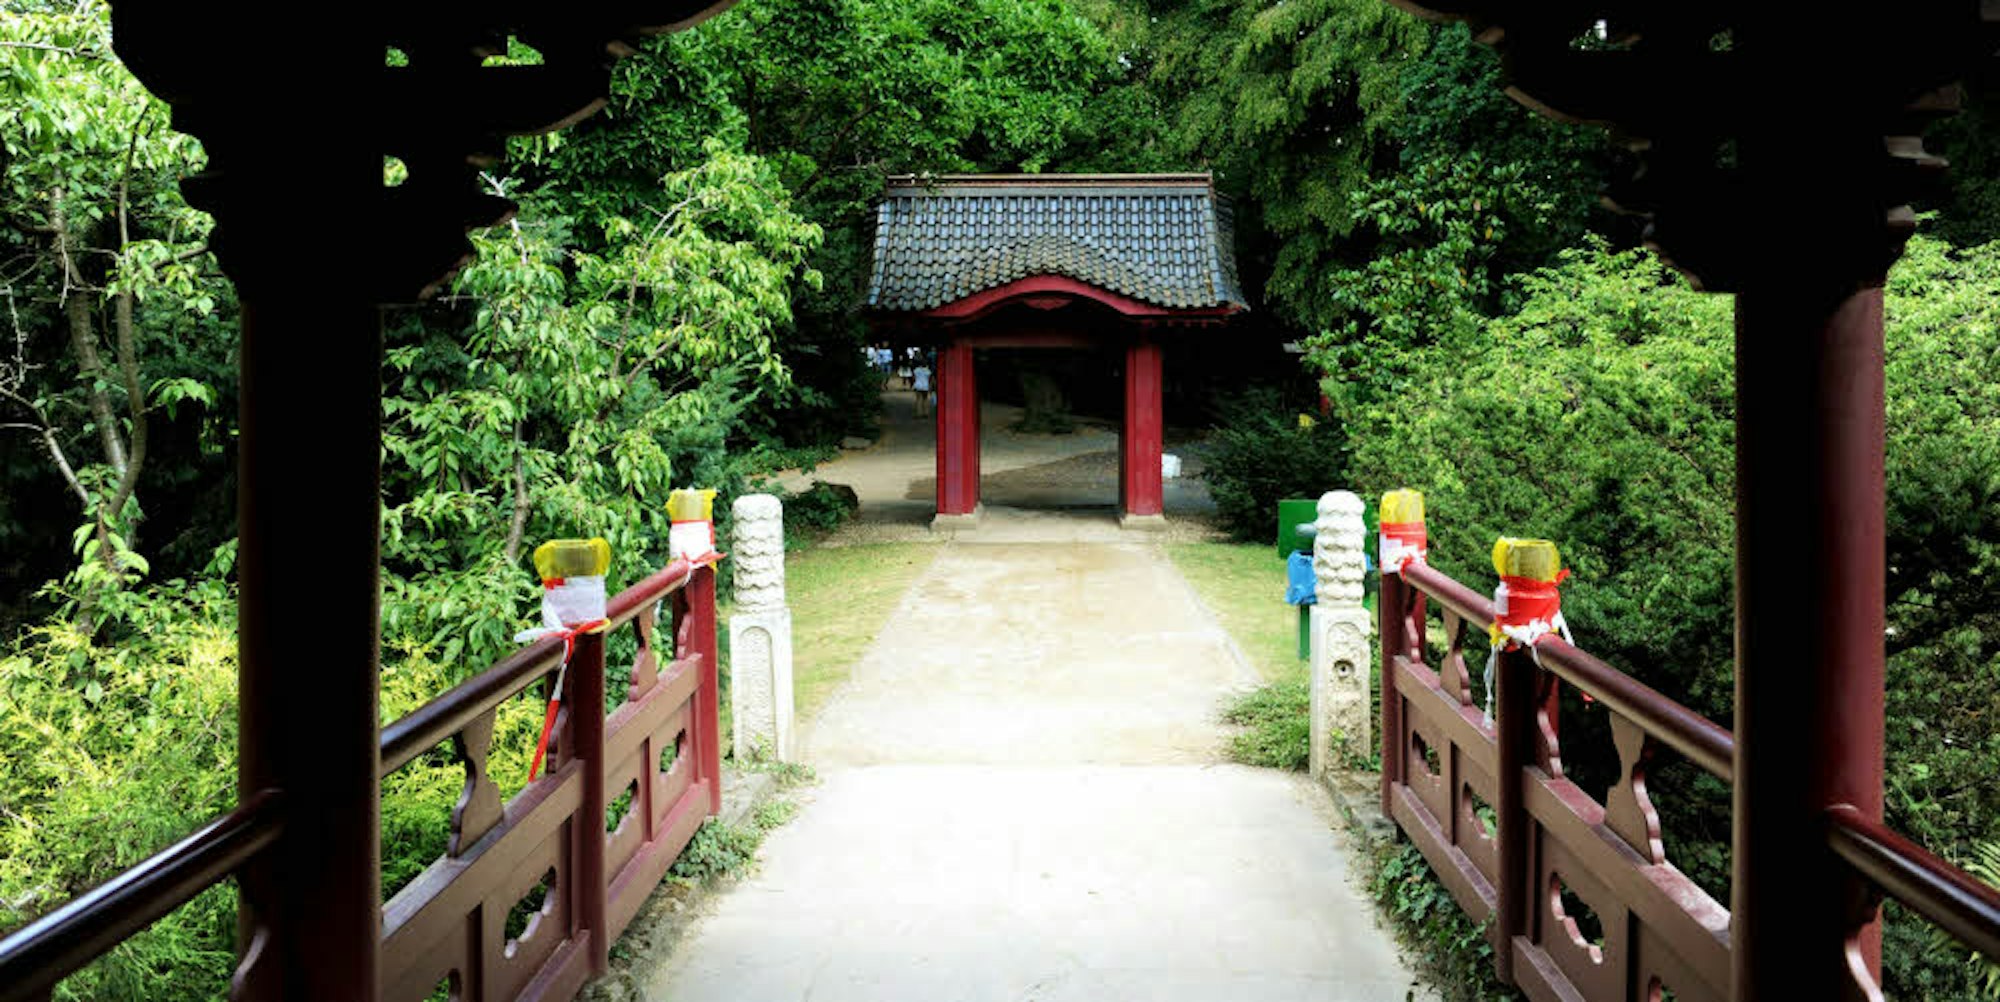 Dunkelrot gestrichene Architekturelemente sind typisch für einen japanischen Garten.